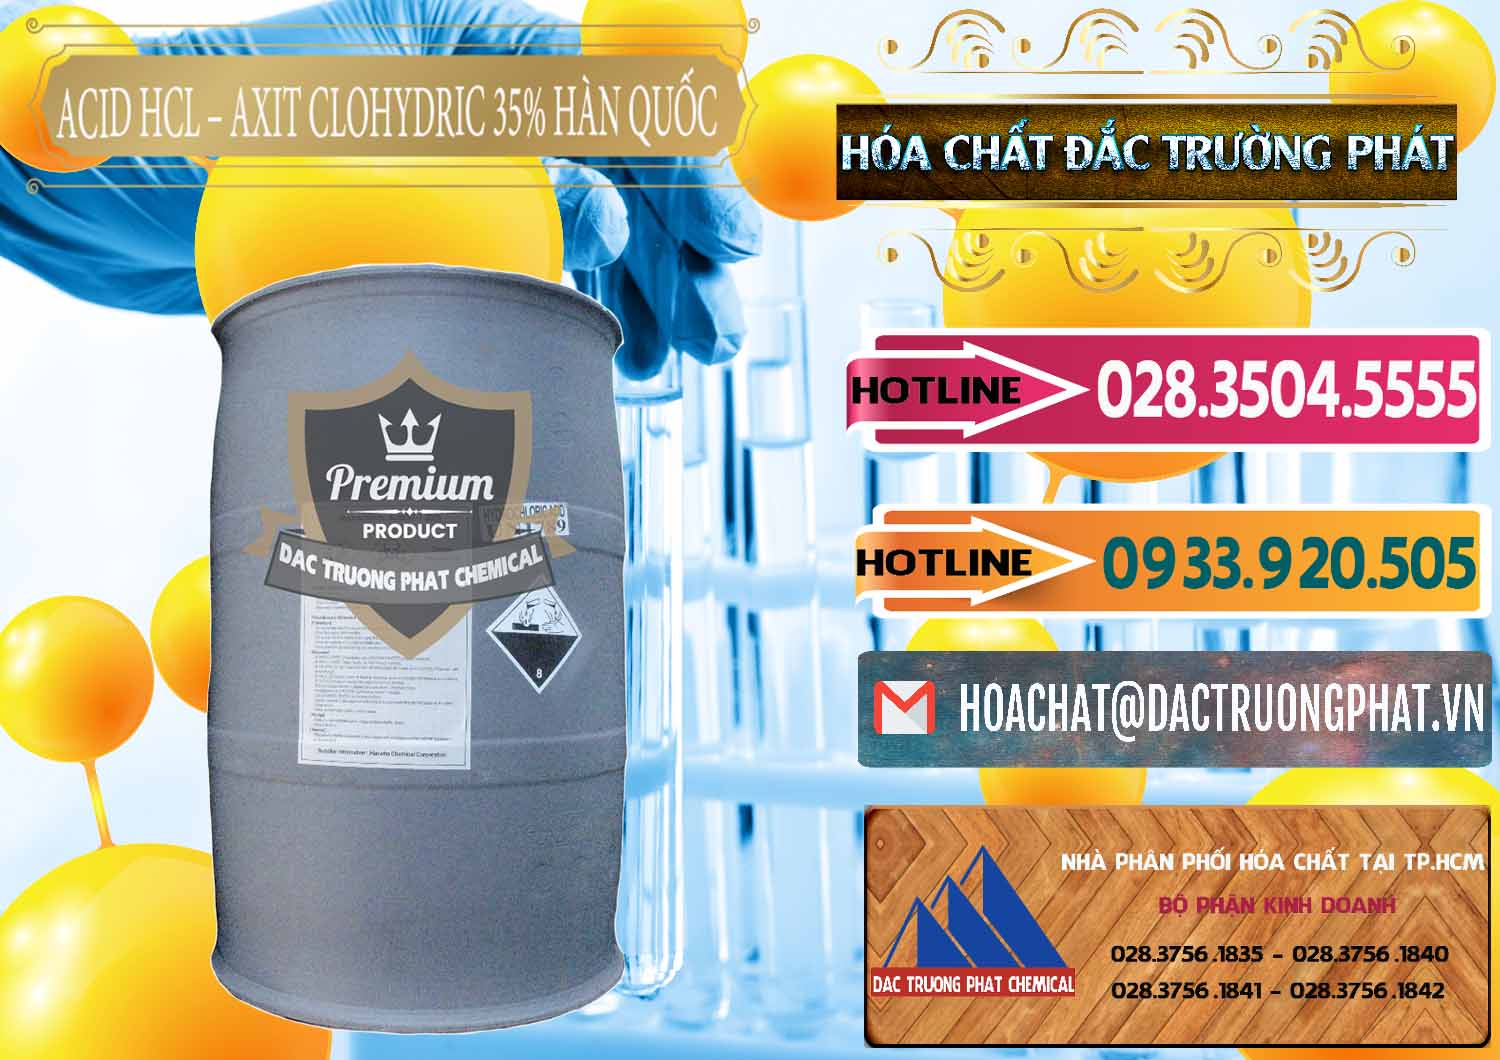 Phân phối - bán Acid HCL - Axit Cohidric 35% Hàn Quốc Korea - 0011 - Chuyên phân phối & nhập khẩu hóa chất tại TP.HCM - dactruongphat.vn